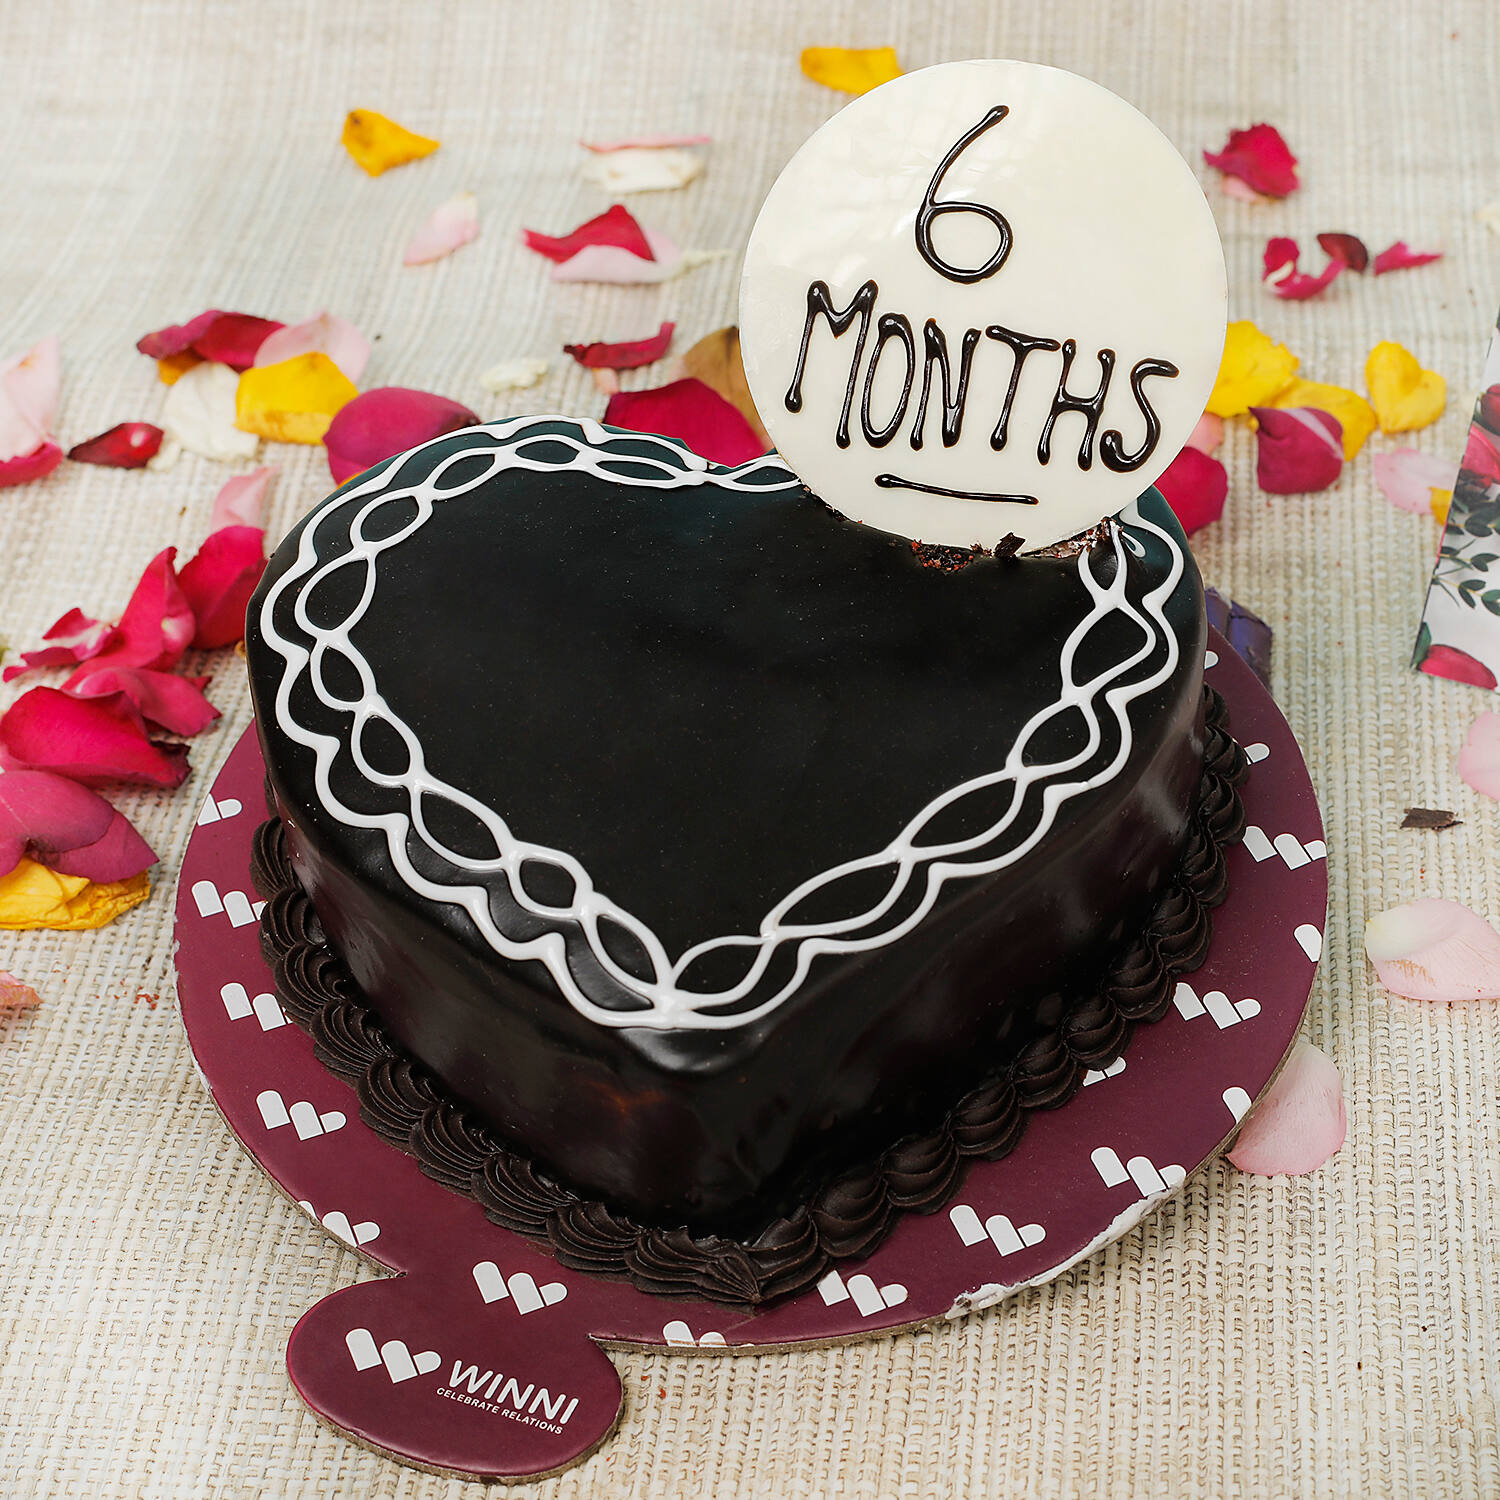 6 Months Red Velvet Heart Shape Cake | Winni.in